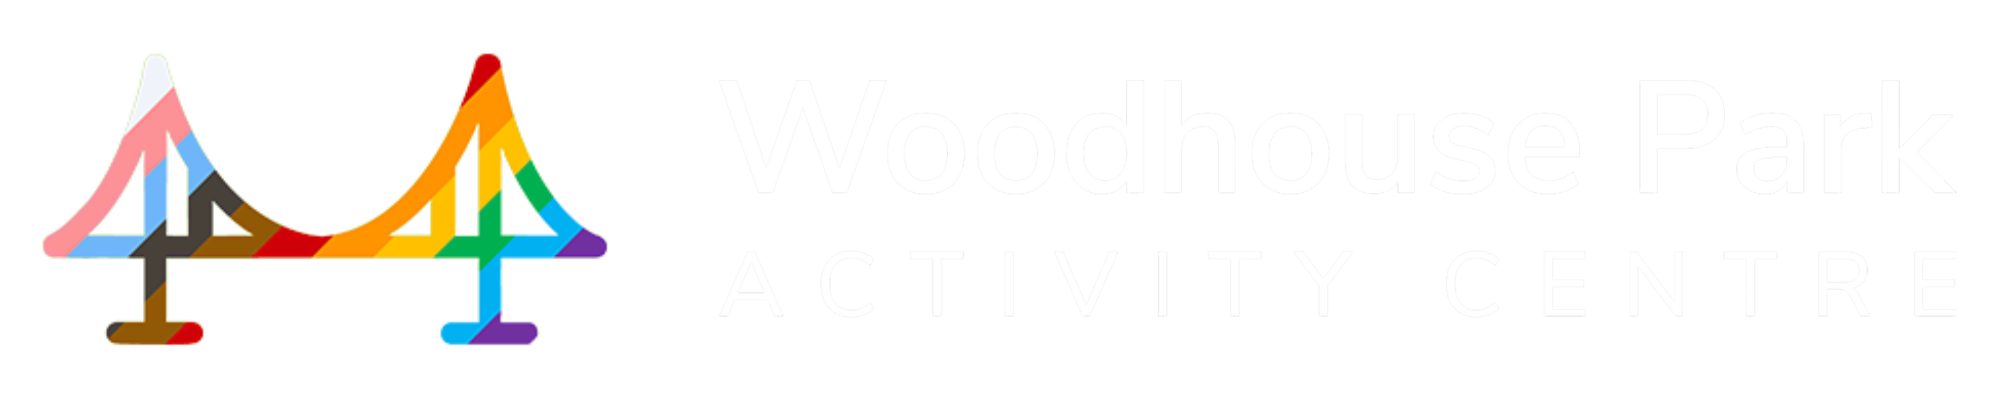 Woodhouse Park Activity Centre